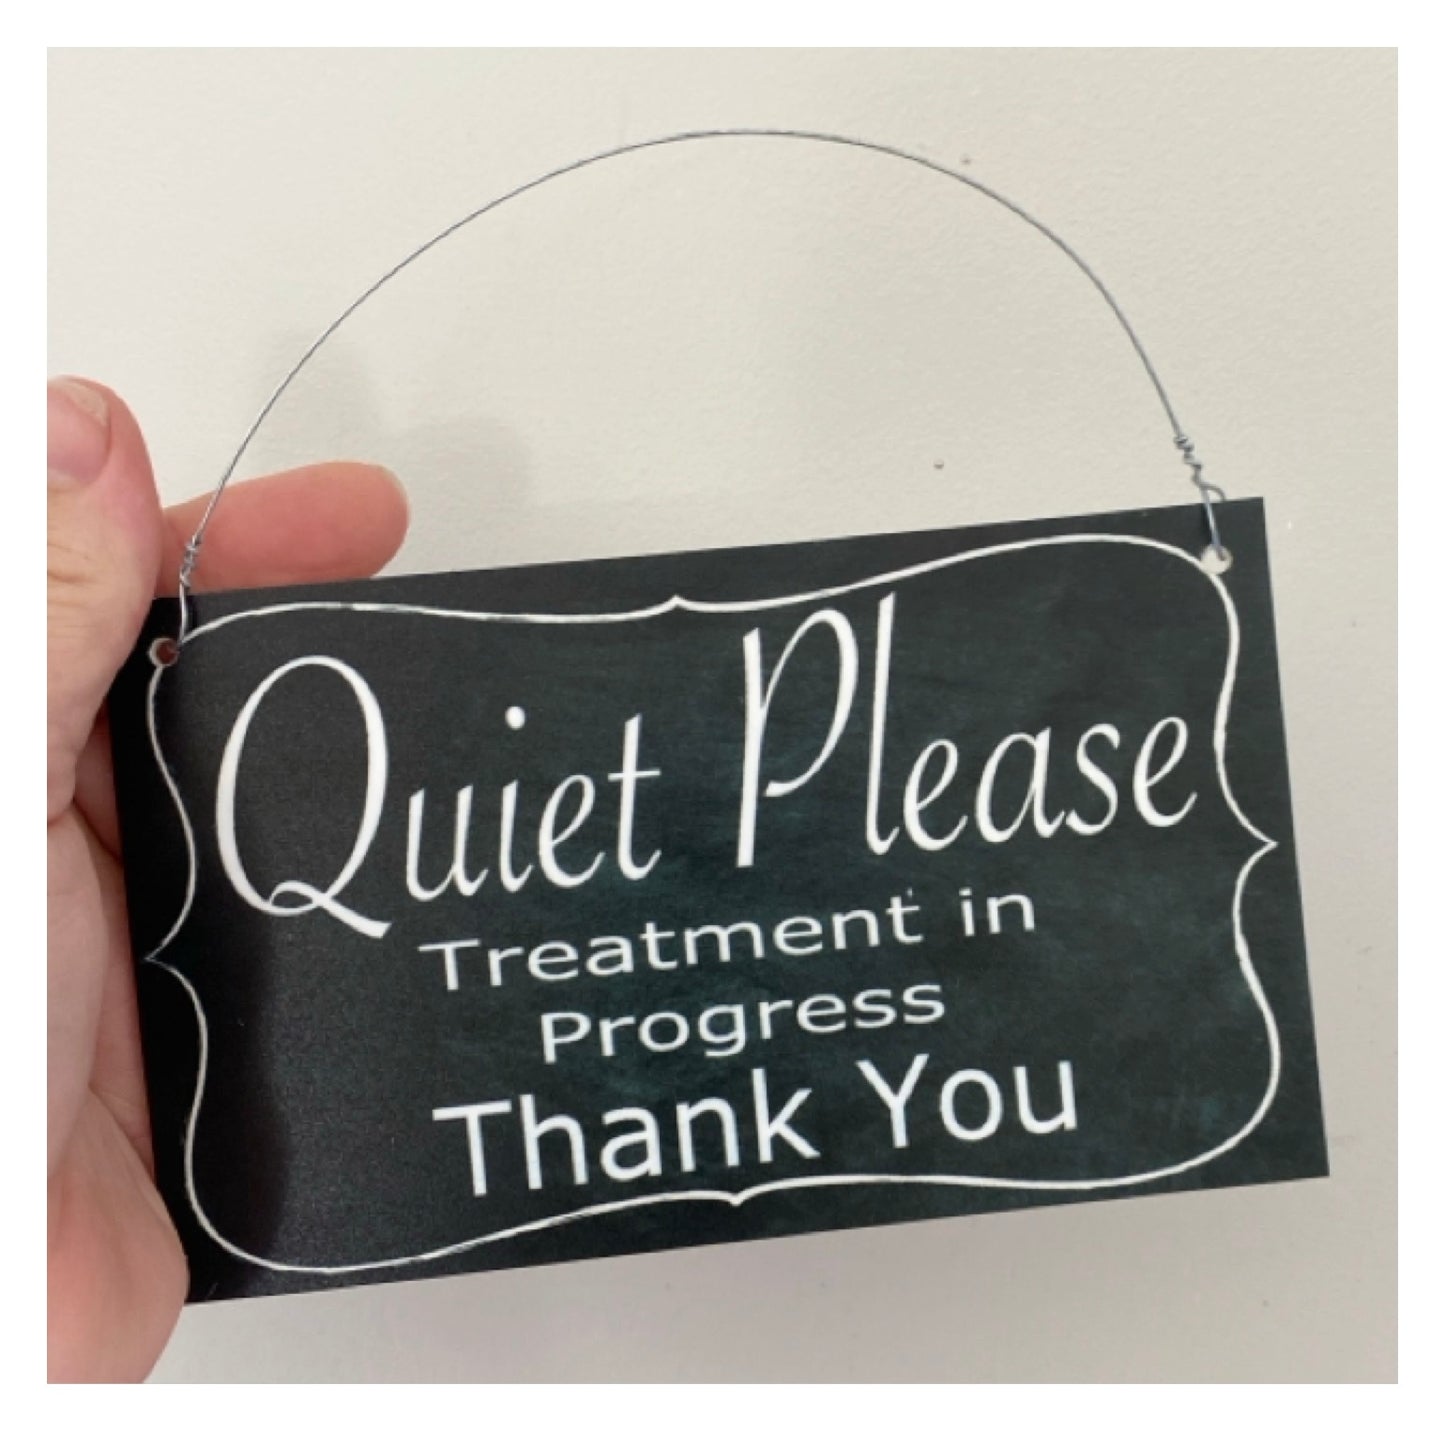 Quiet Please Clinic Treatment Massage Sign